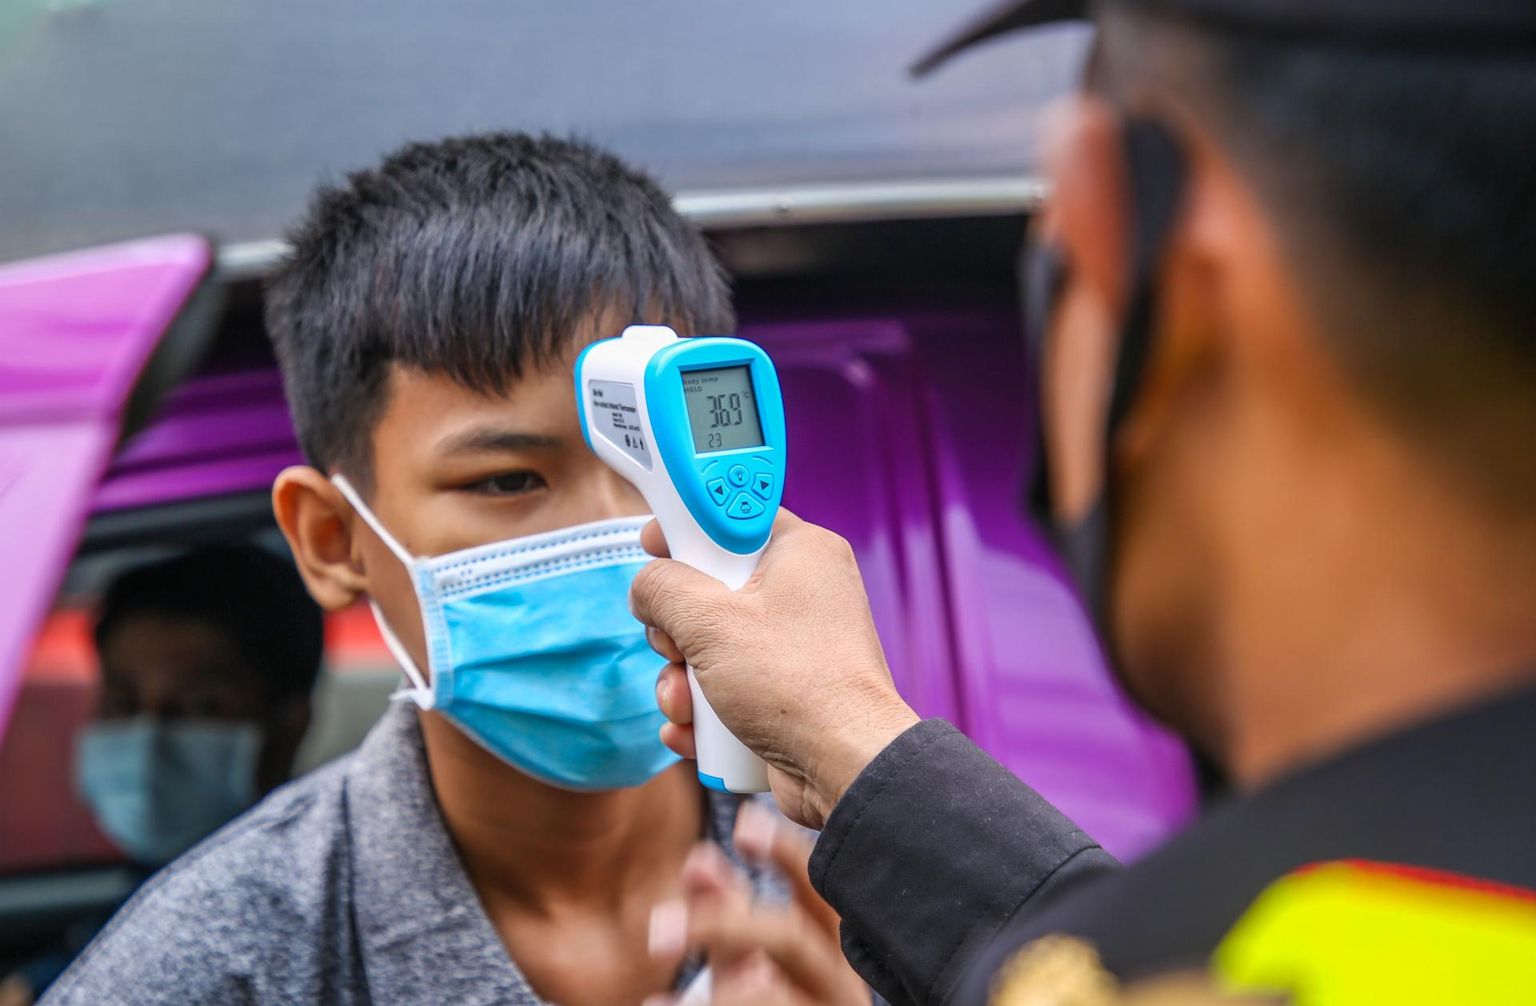 Kohustuslik koroonaviiruse vastu testimine võib näida küll karmi muutusena riigivõimu suurenemise suunas, kuid viimase 200 aasta jooksul on riigid pidevalt rahvatervise ja hügieeni nimel muskleid pingutanud. Pildil politsei kontrollpunkt Bangkokis.